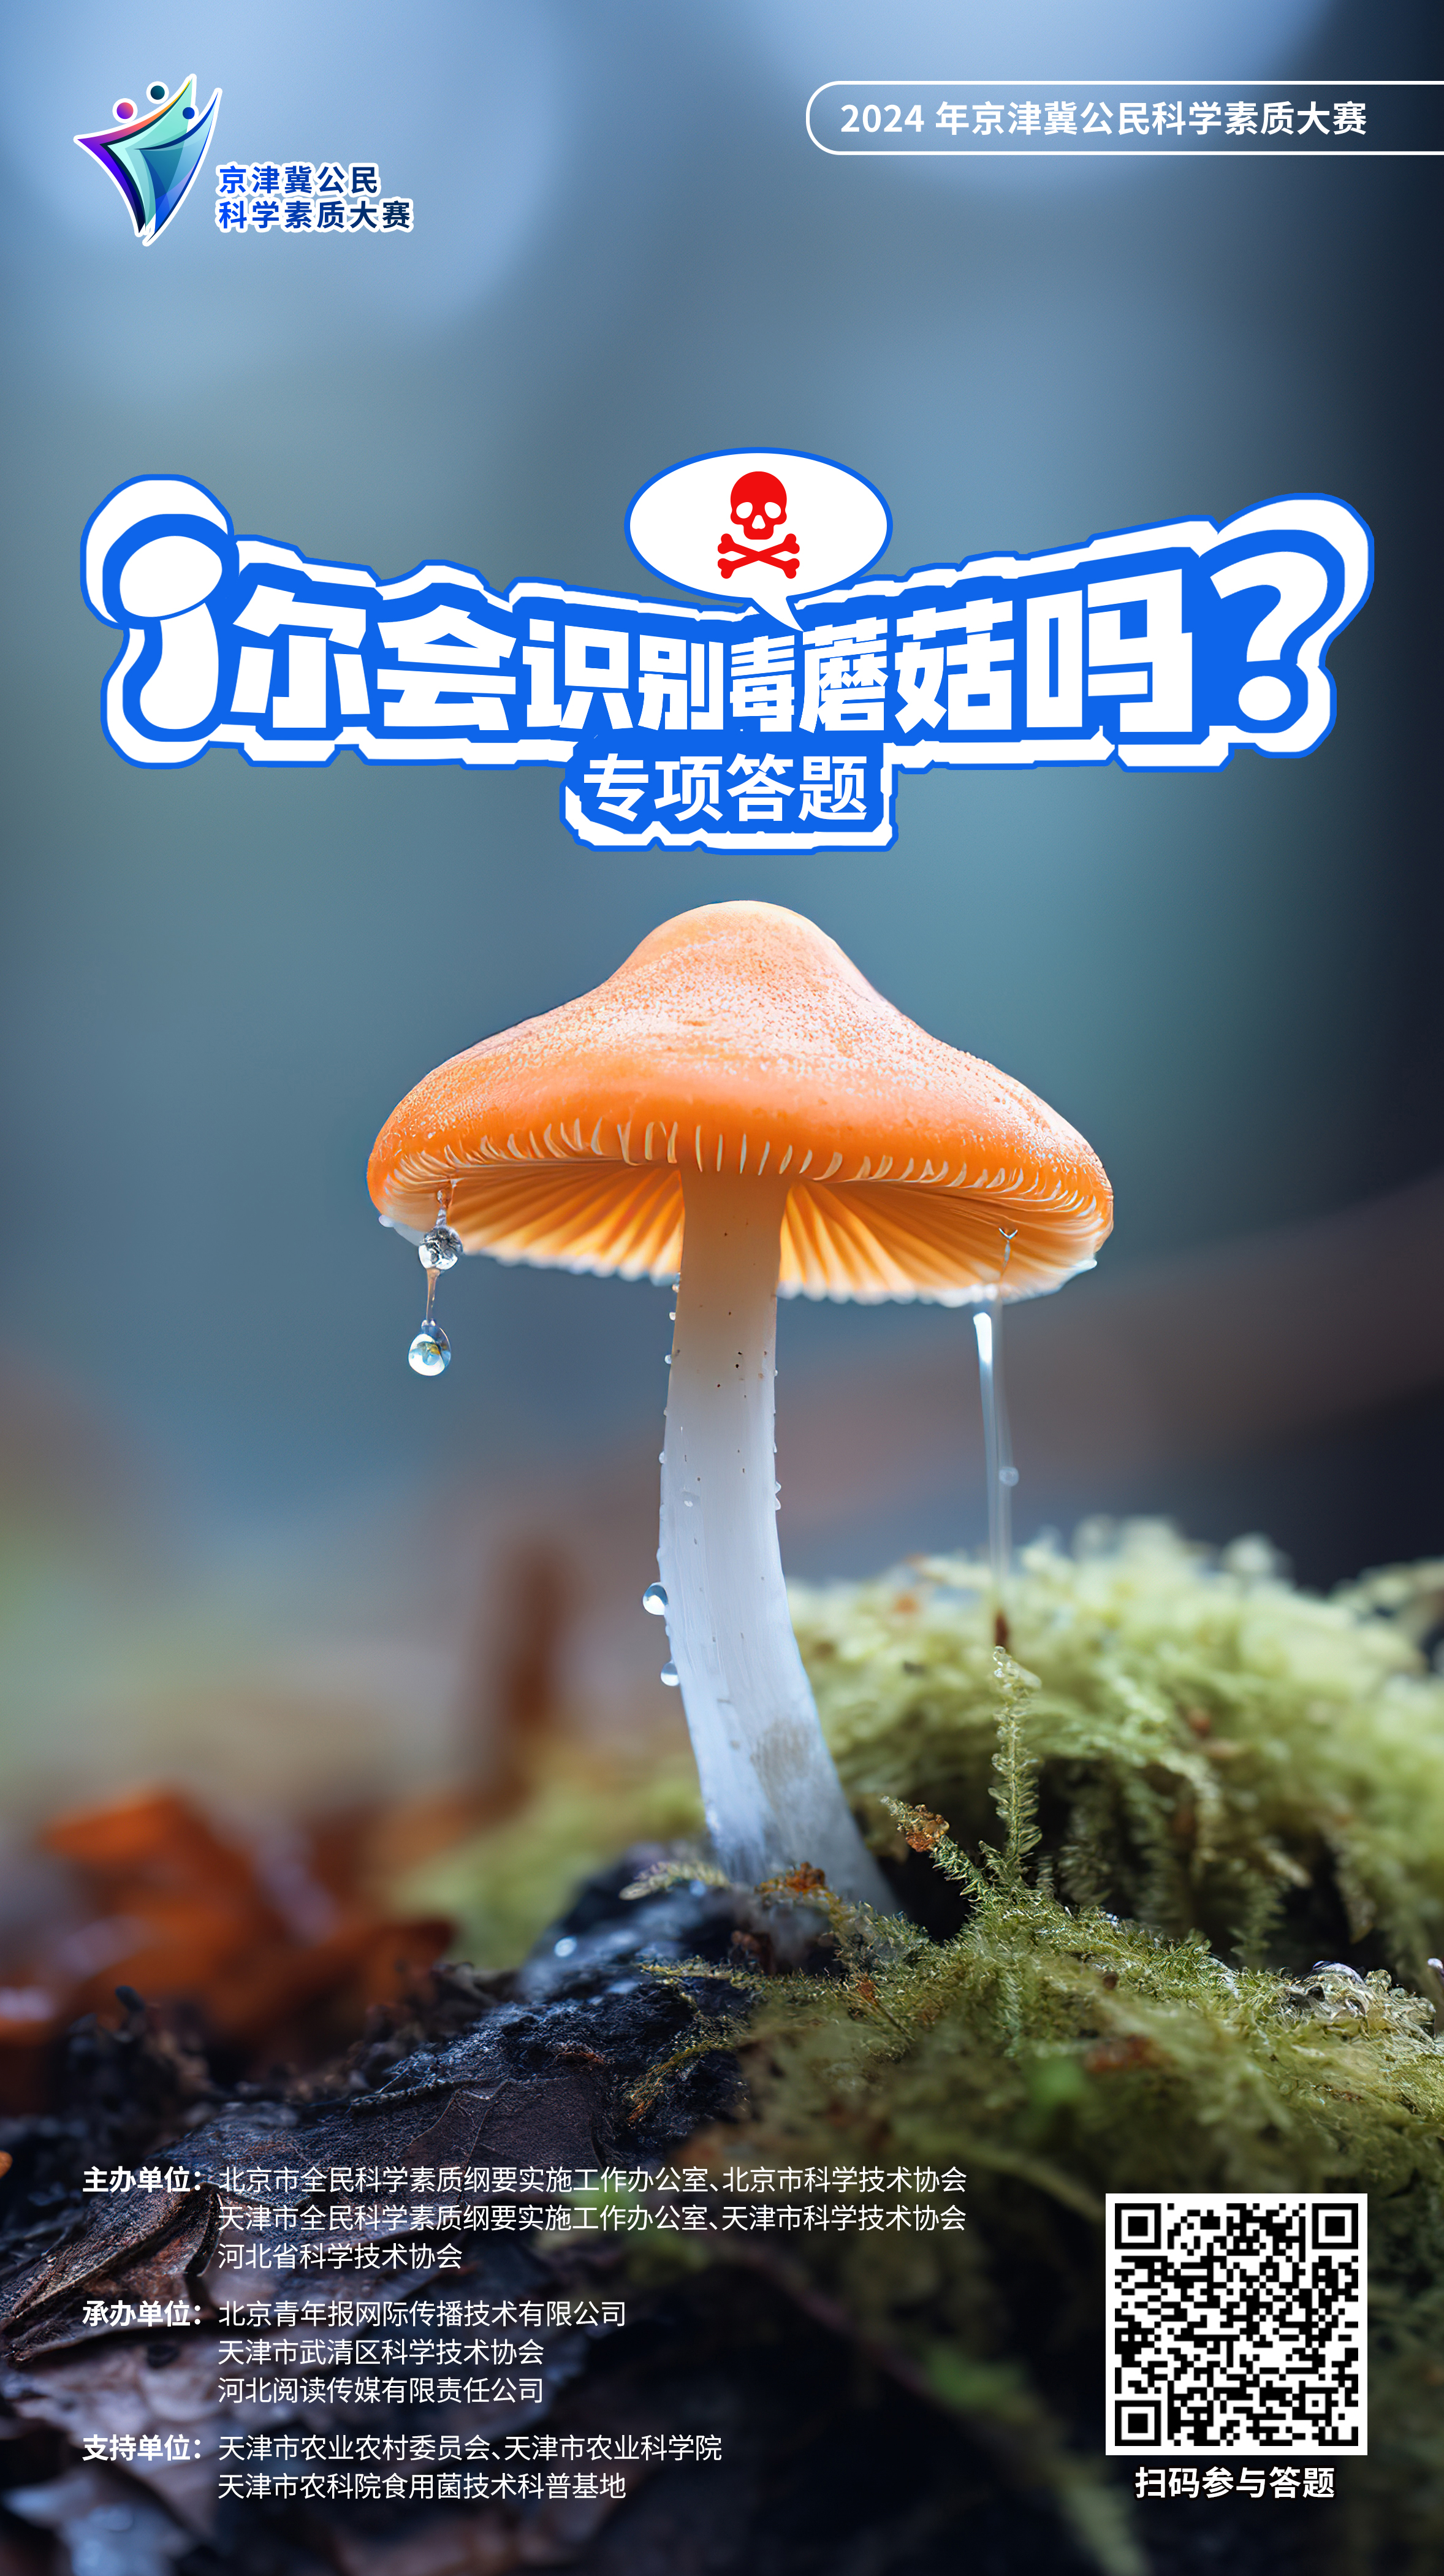 【专项答题】丨蘑菇怎么吃才安全又美味？